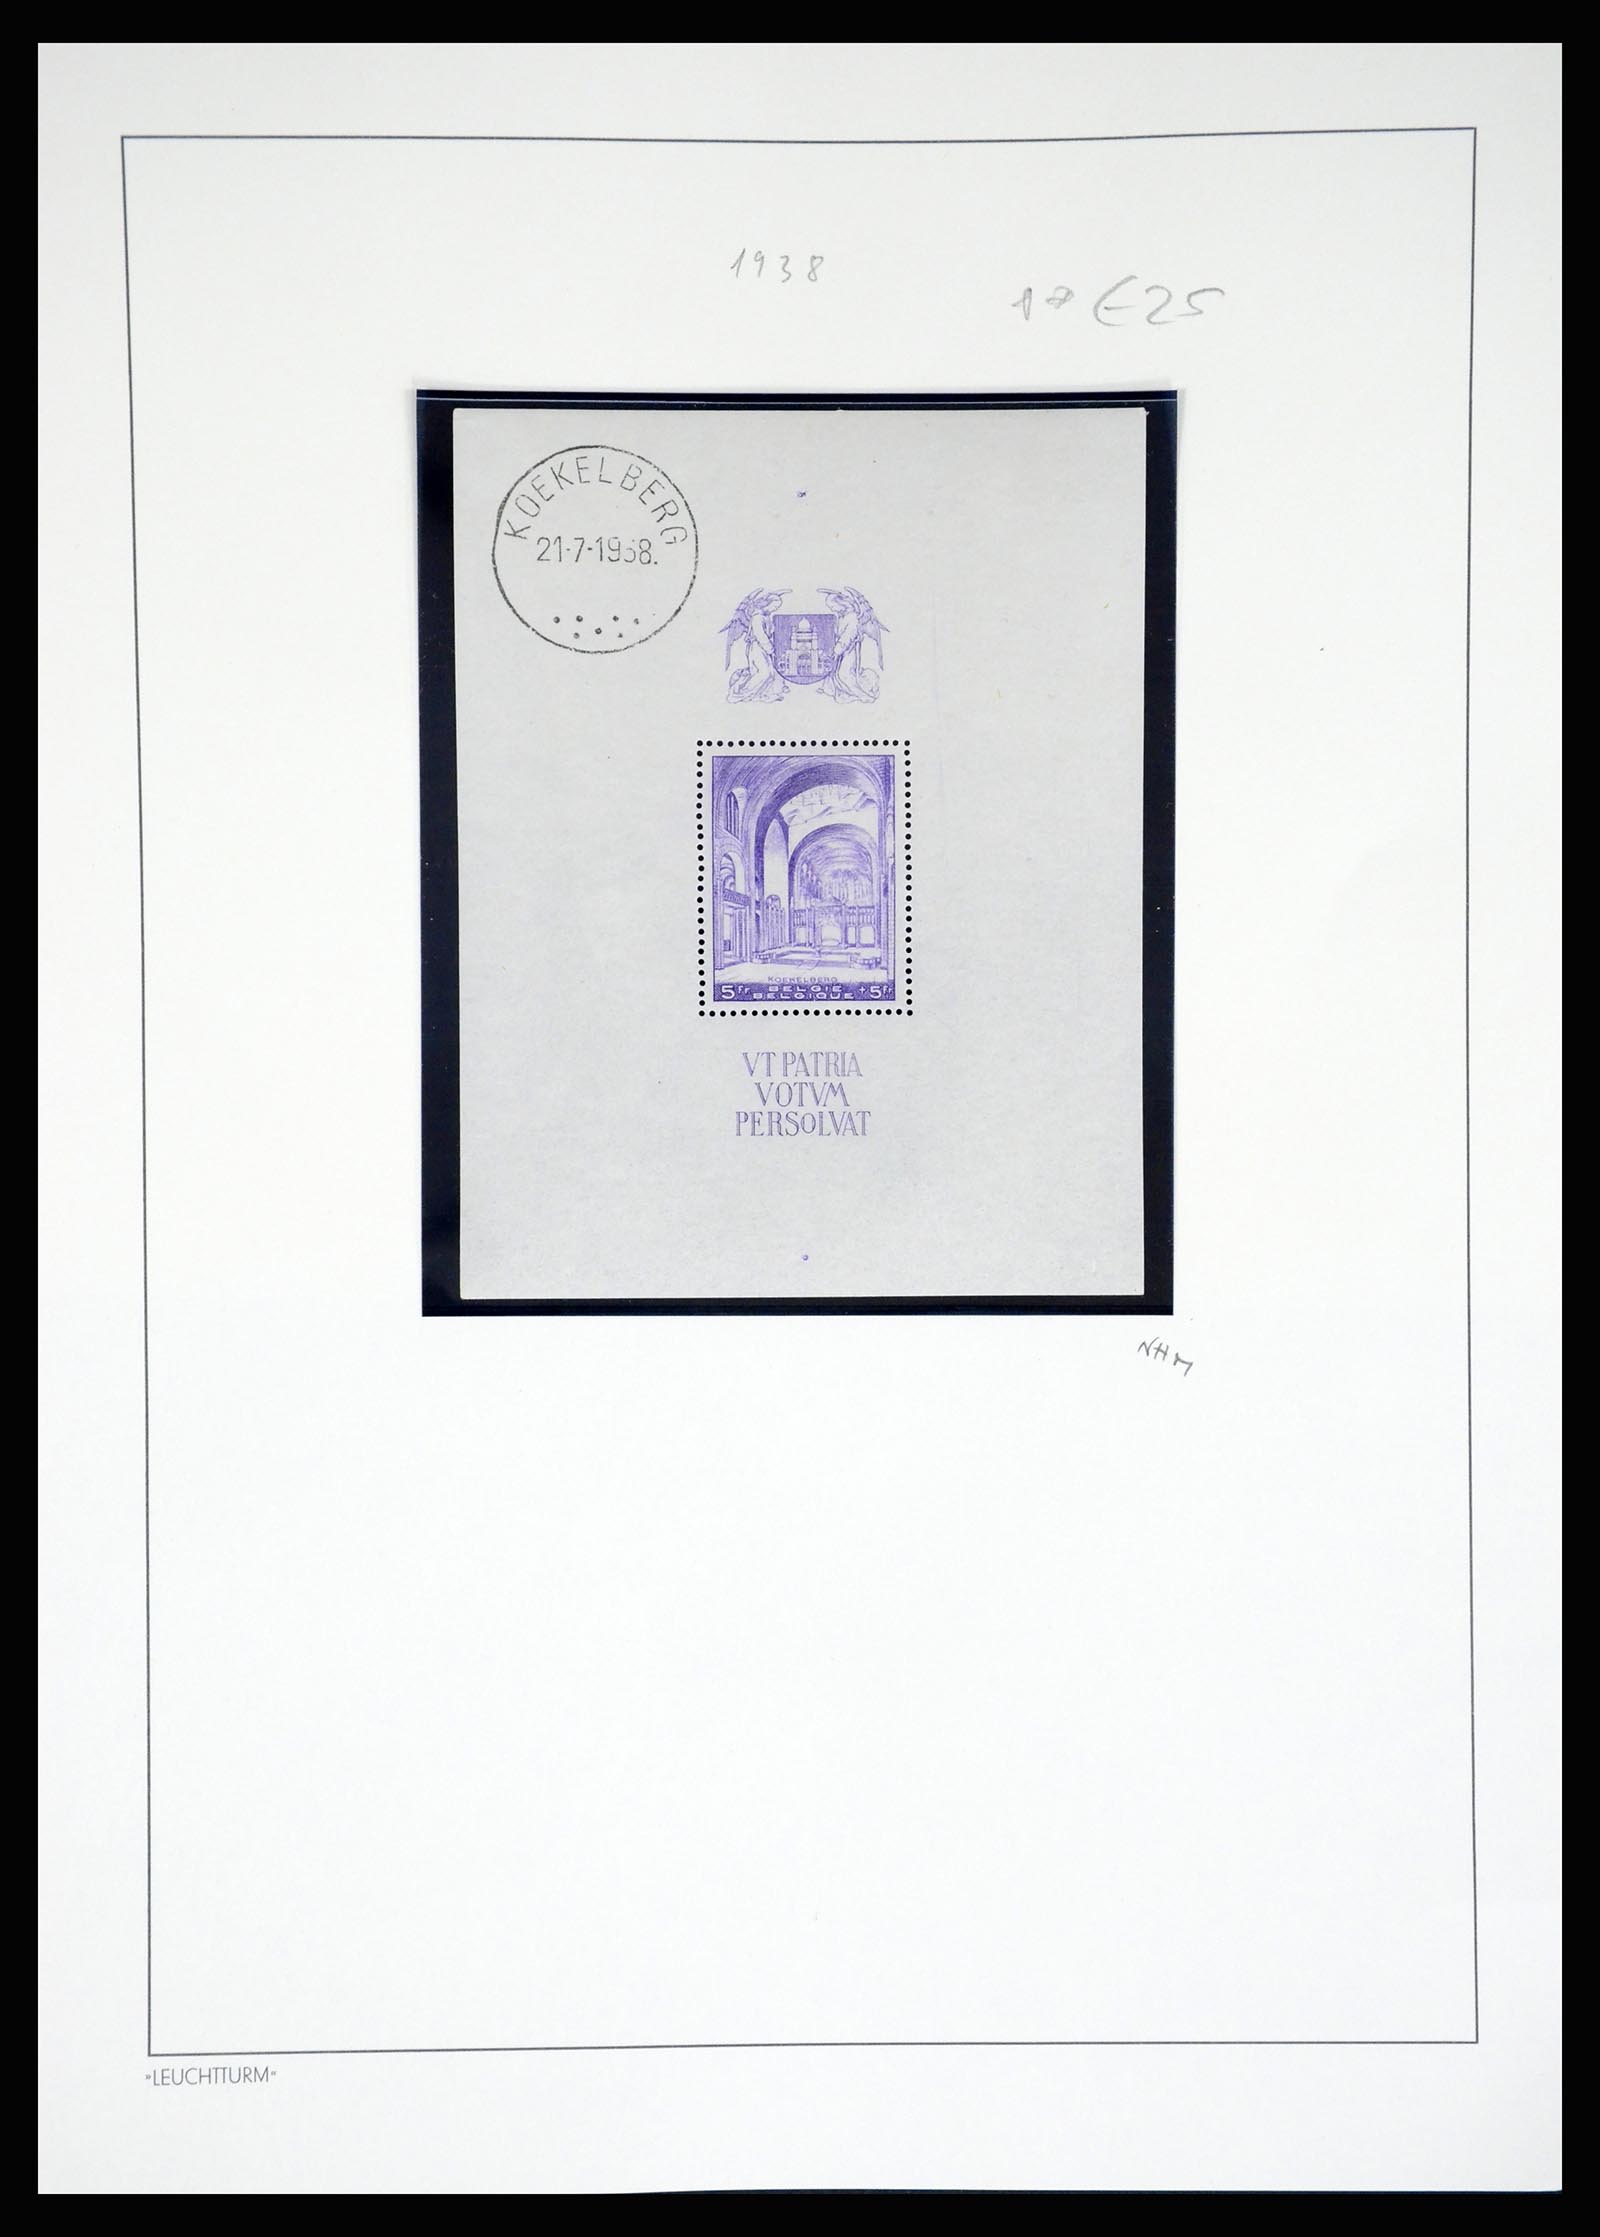 37272 008 - Stamp collection 37272 Belgium souvenir sheets 1924-1938.